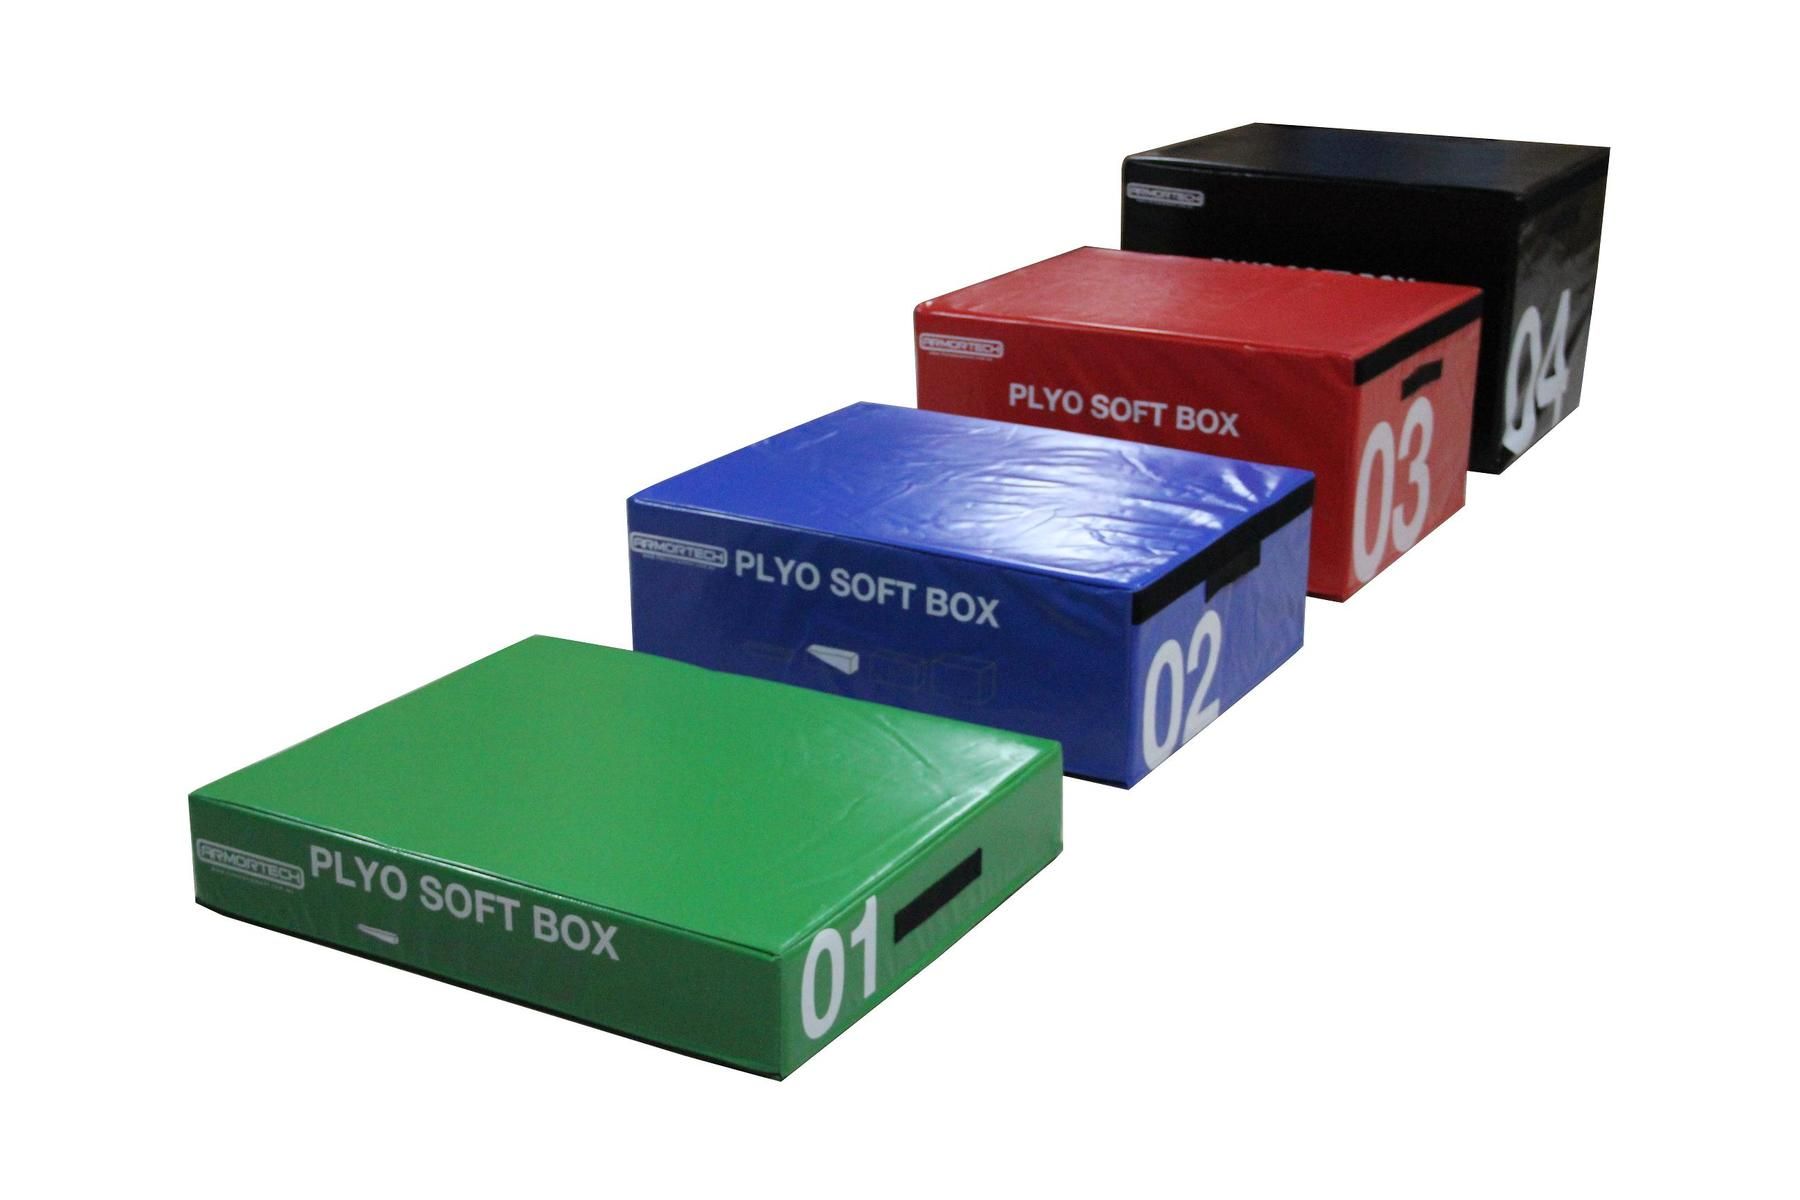 Armortech Foam Plyometric Box Jump Set (4 Boxes)